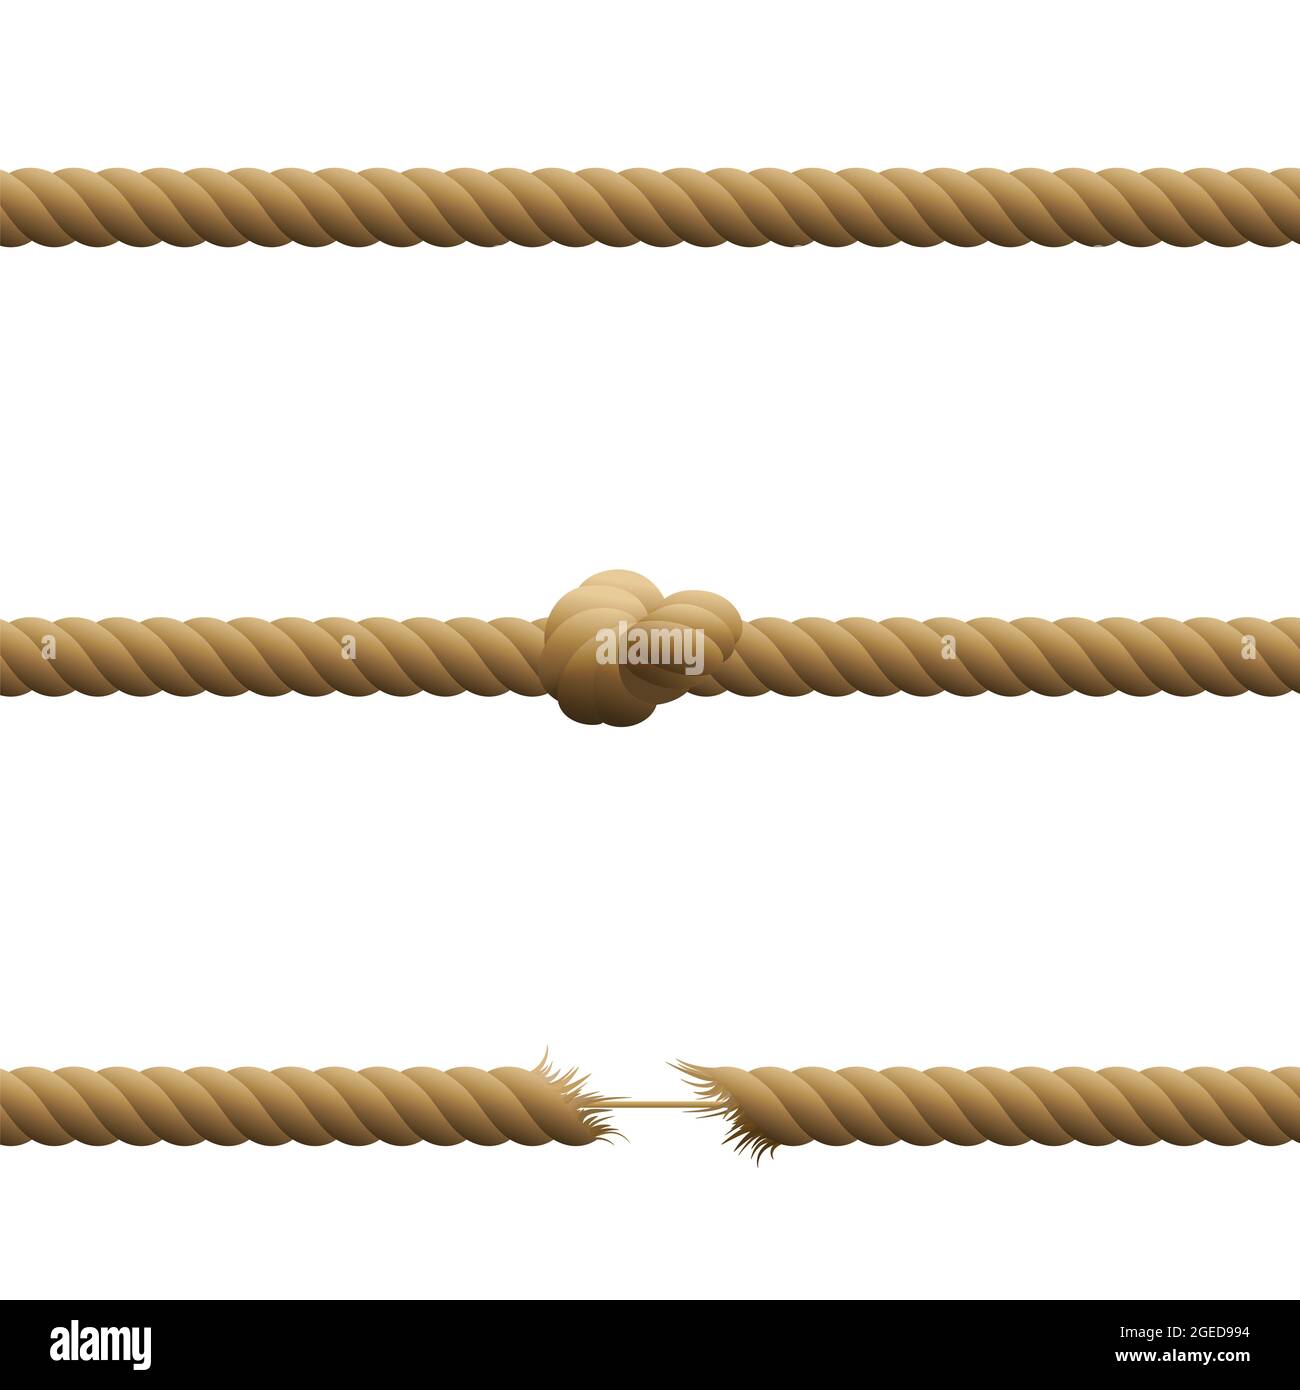 Corde - intatte, con nodo e appese da un filo con estremità sfilacciate tese tenute insieme da una sottile corda - illustrazione su sfondo bianco. Foto Stock